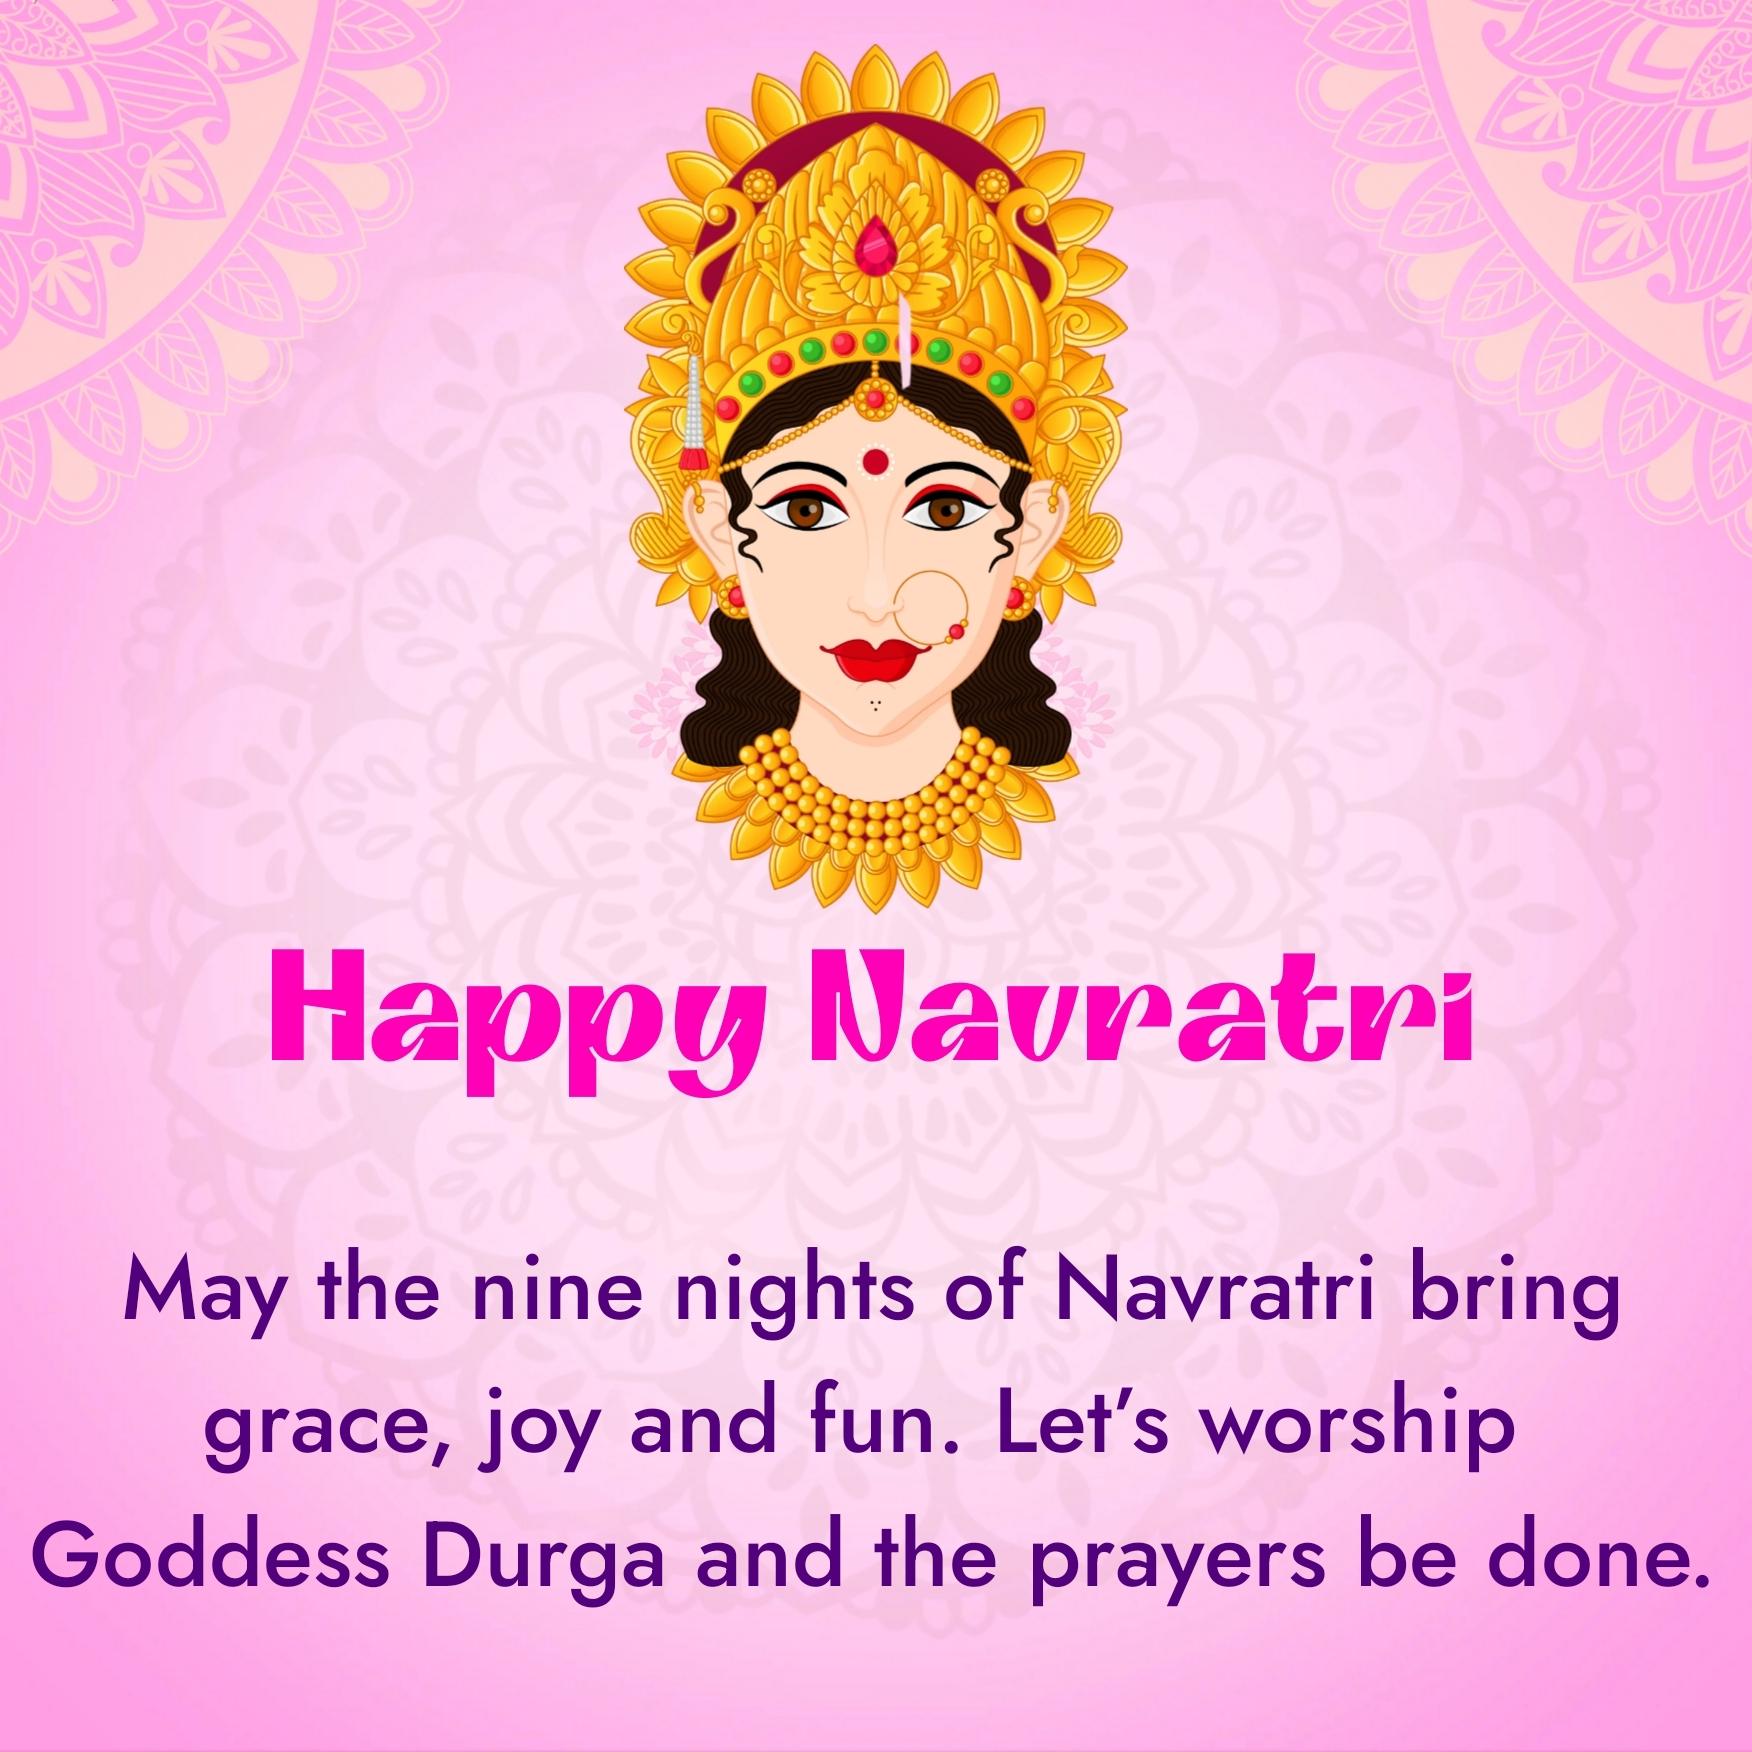 May the nine nights of Navratri bring grace joy and fun